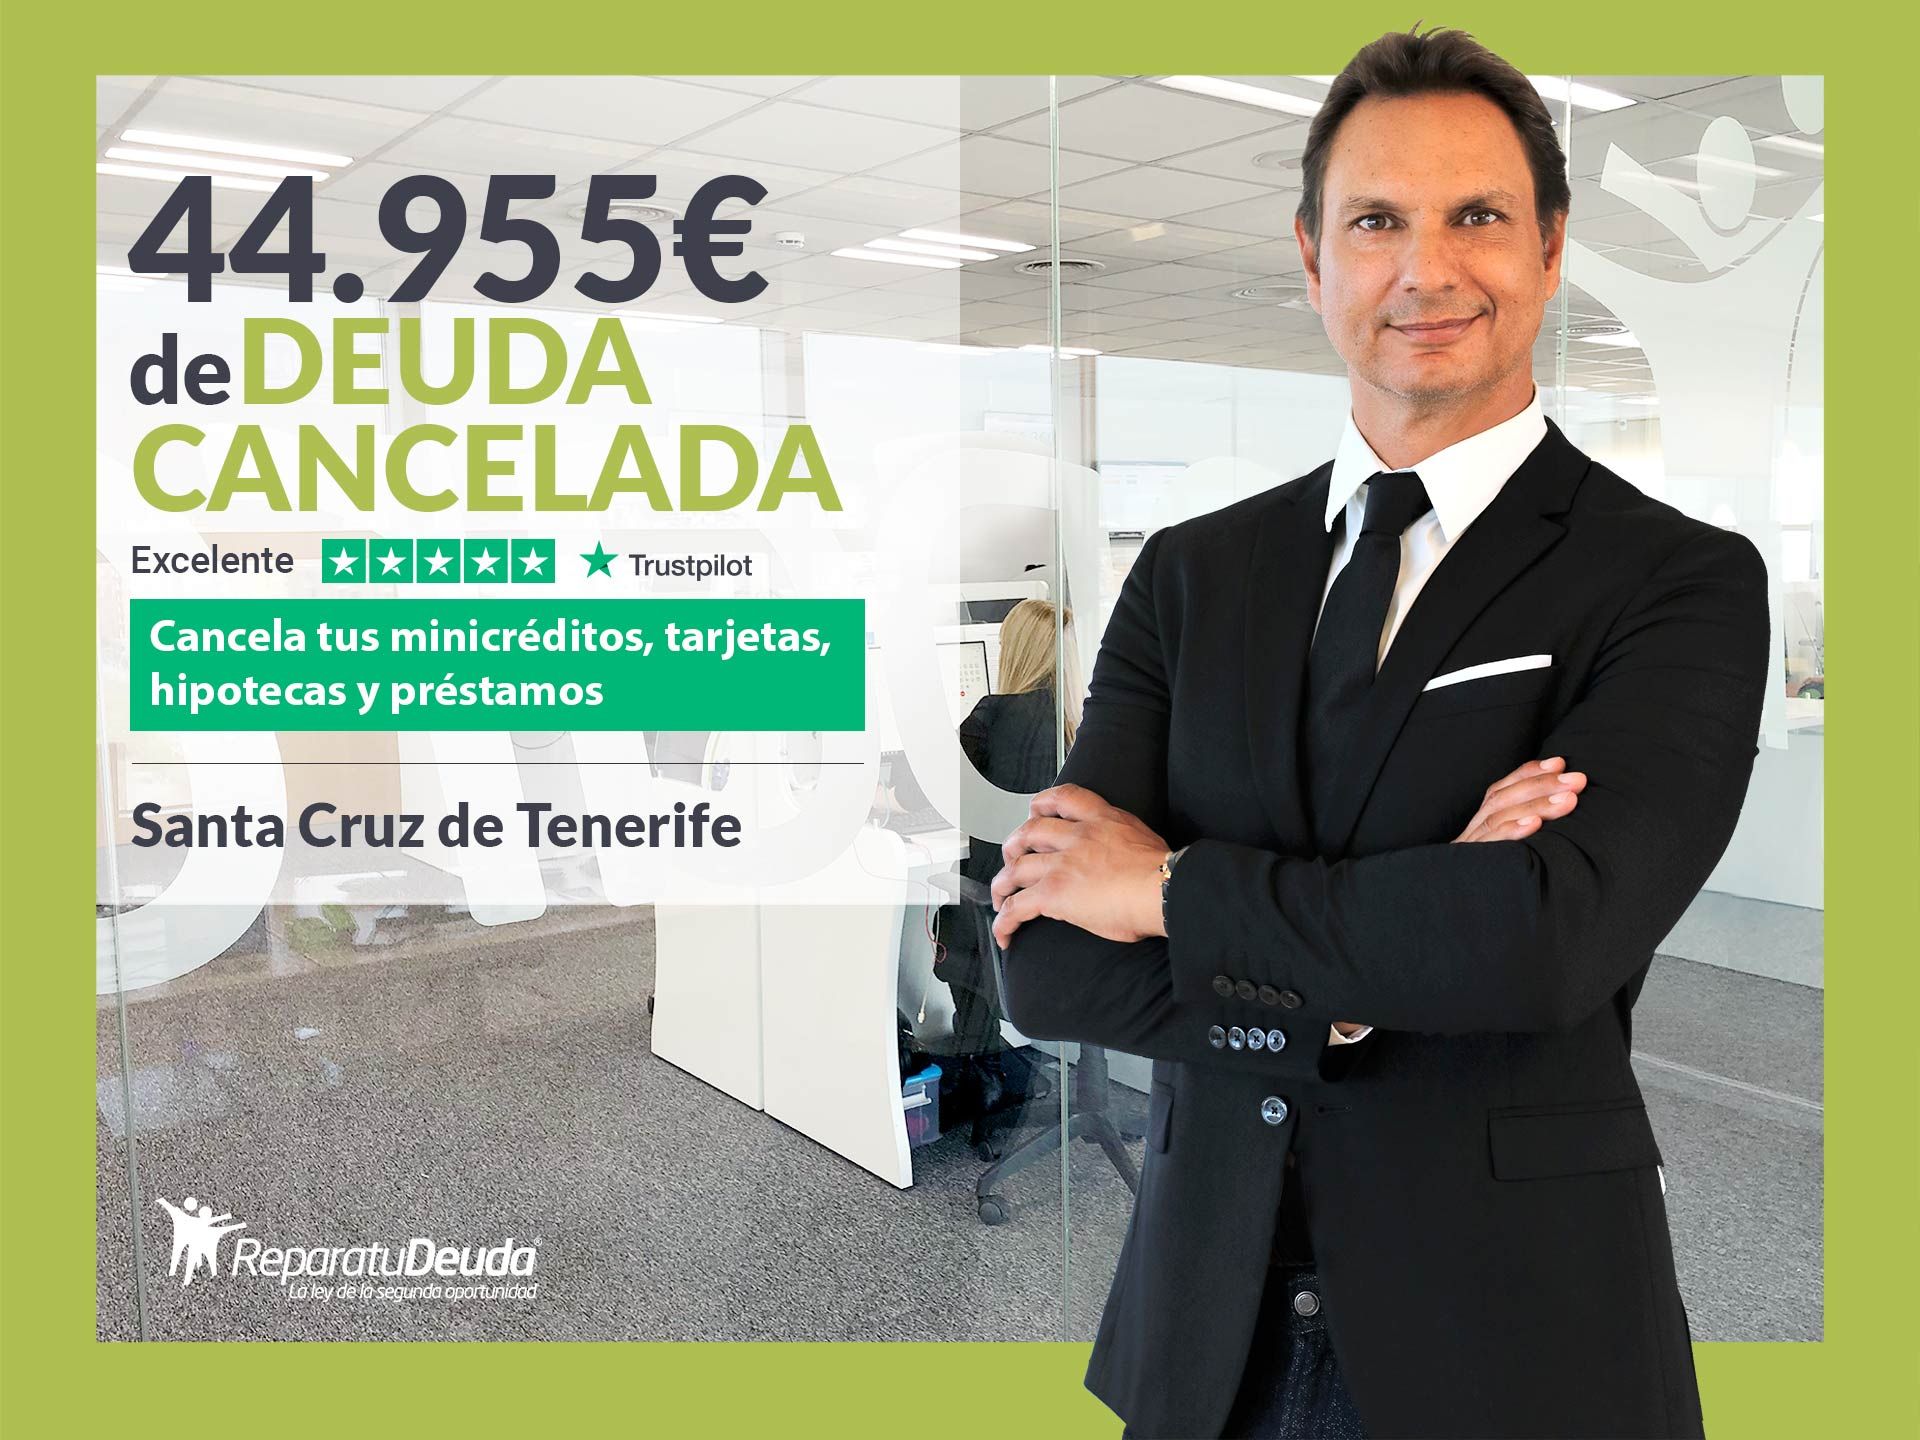 Repara tu Deuda Abogados cancela 44.955? en Tenerife (Canarias) con la Ley de Segunda Oportunidad